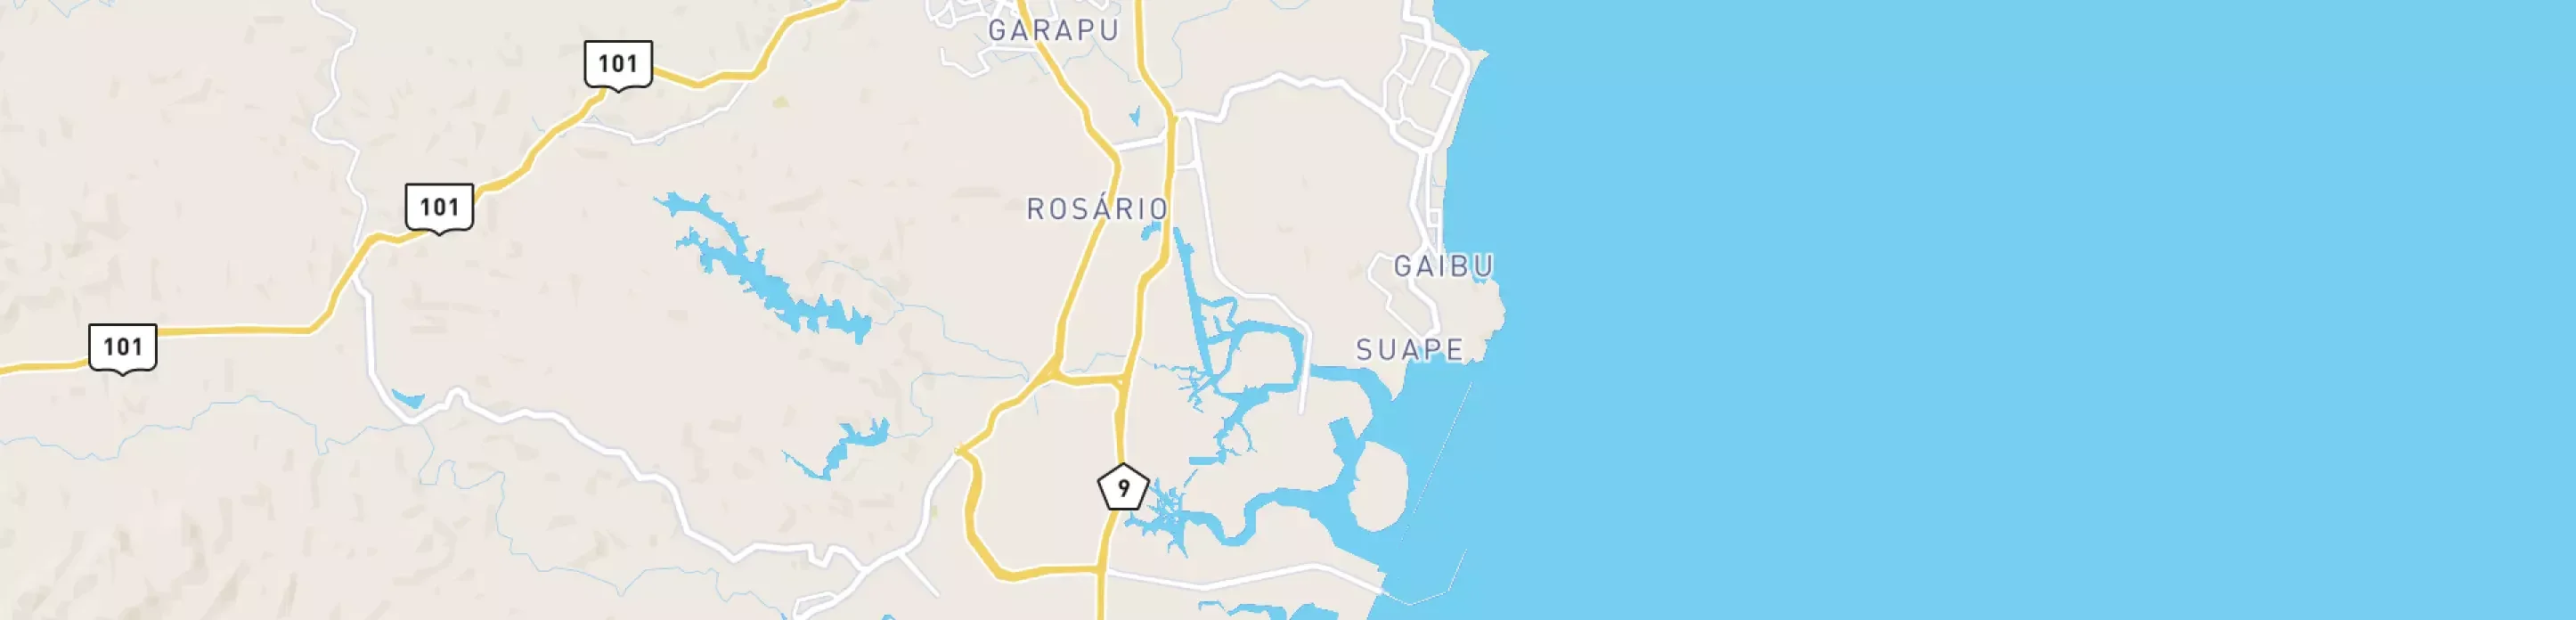 Mapa mostrando localização do terminal logístico de Suape, da Petrobras.